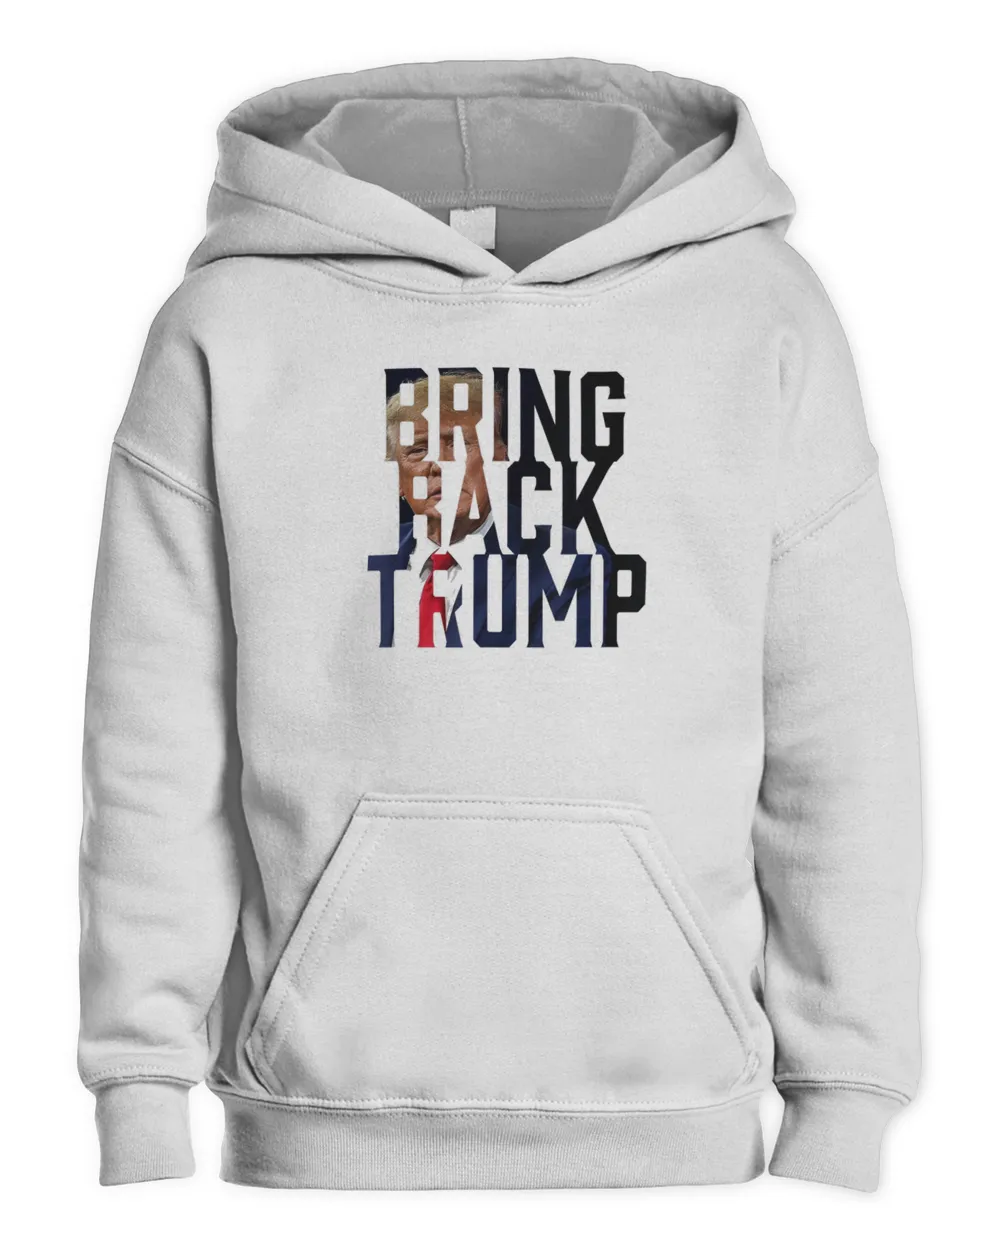 Bring Back Trump Republican Political T-Shirt